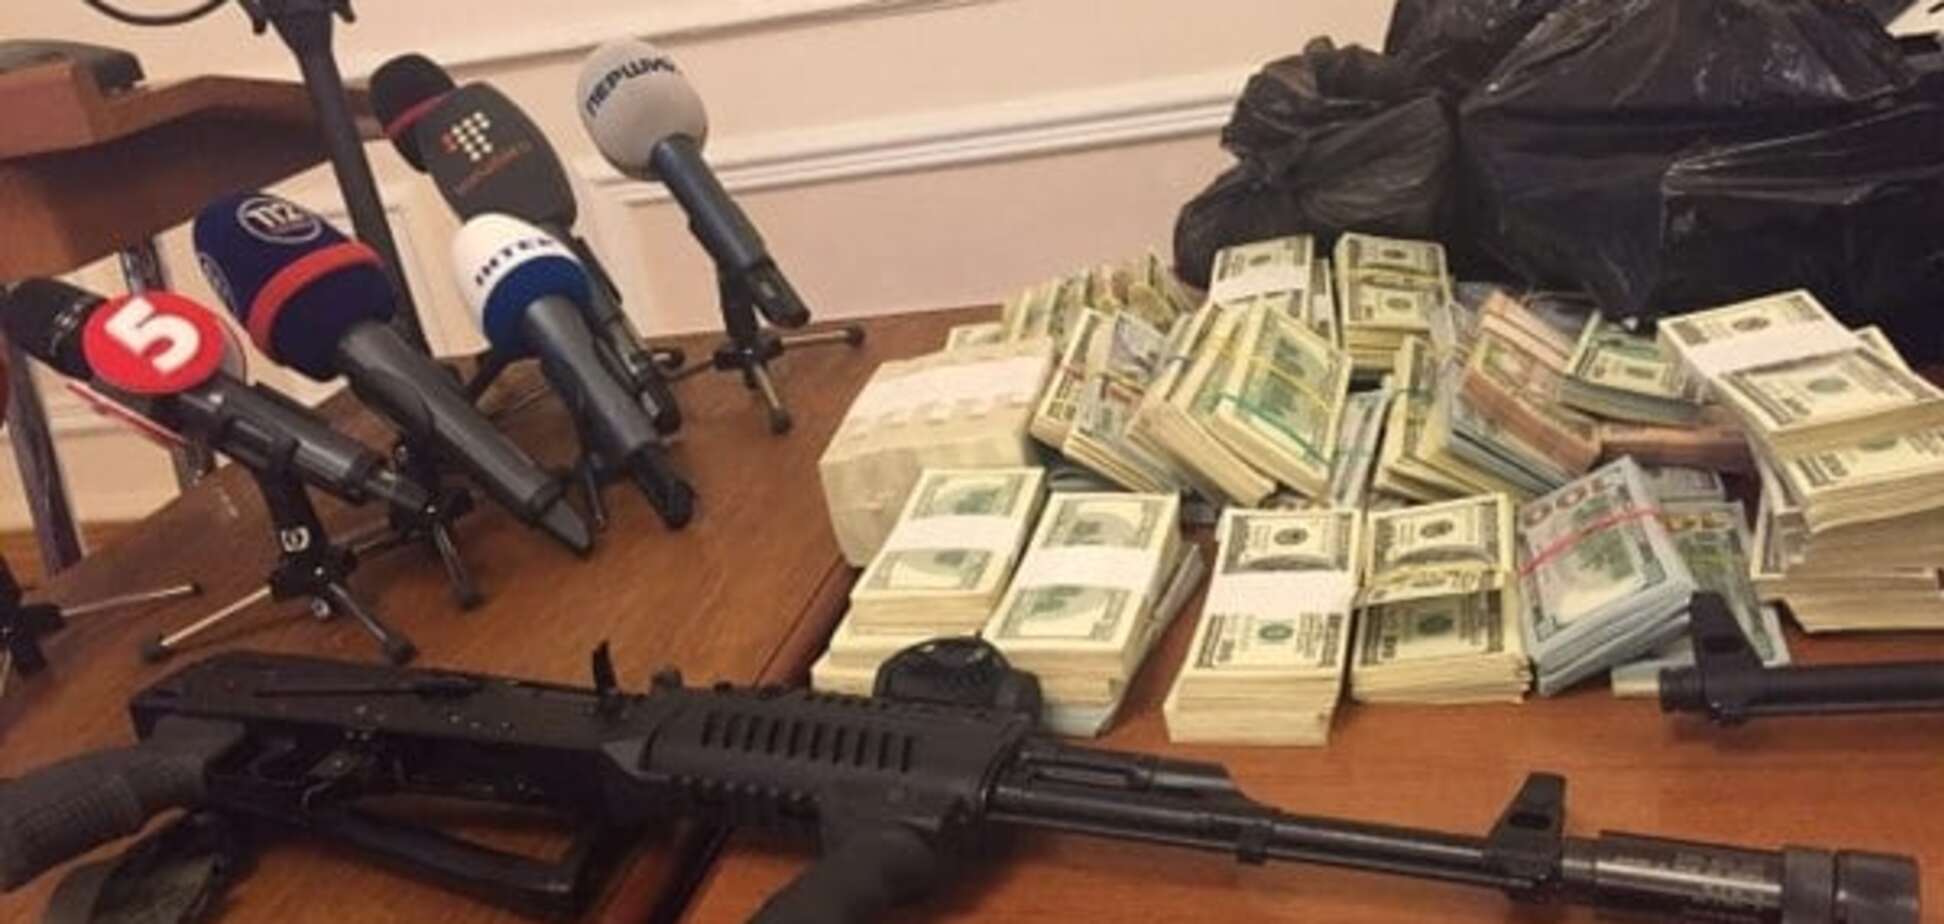 Все, что изъяли в Днепропетровске: СБУ показала вещдоки, деньги и оружие. Фоторепортаж 